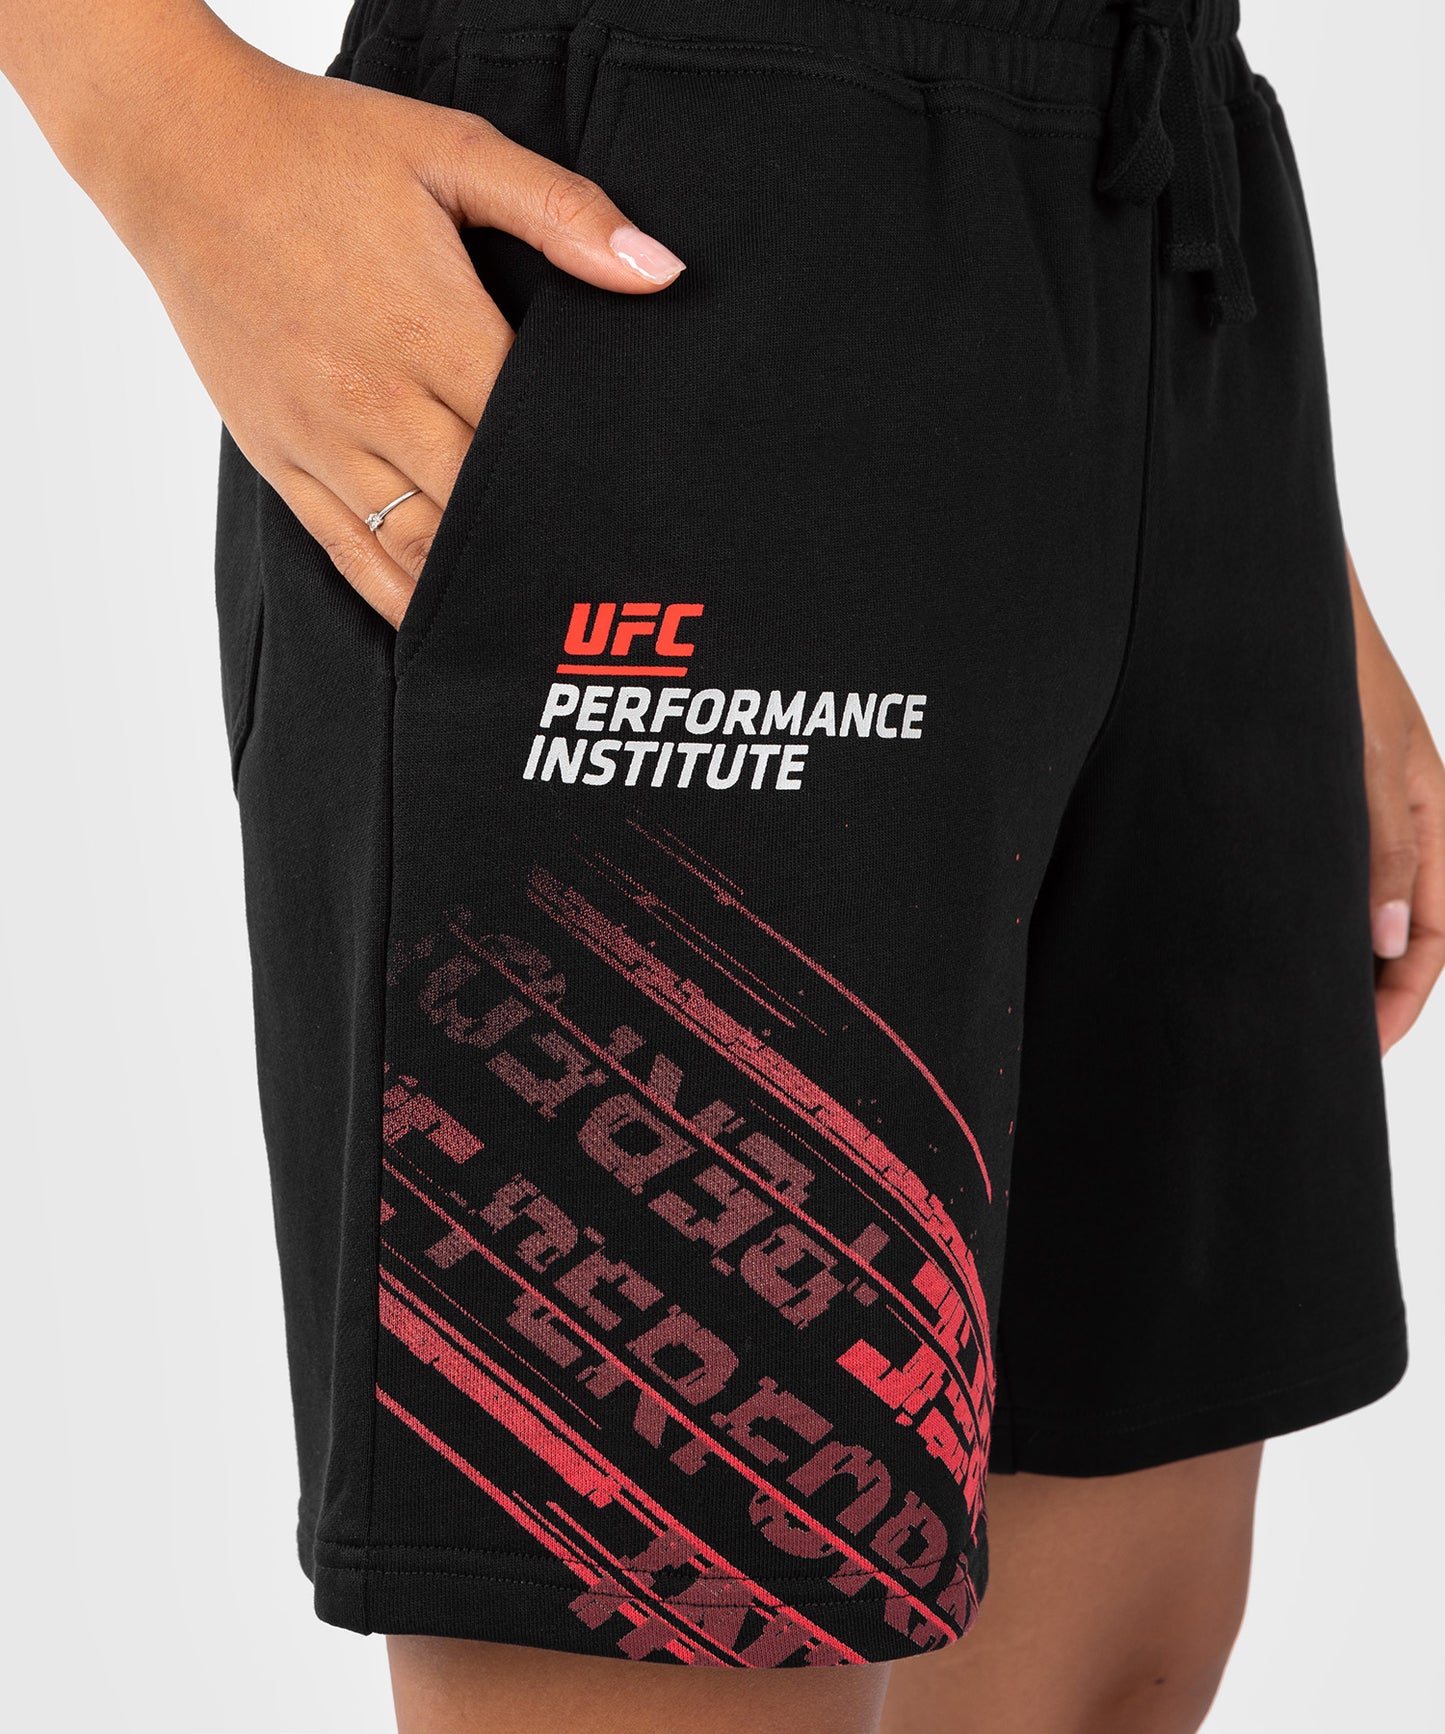 Short de performance pour femmes UFC Venum Performance Institute 2.0 - Noir/Rouge